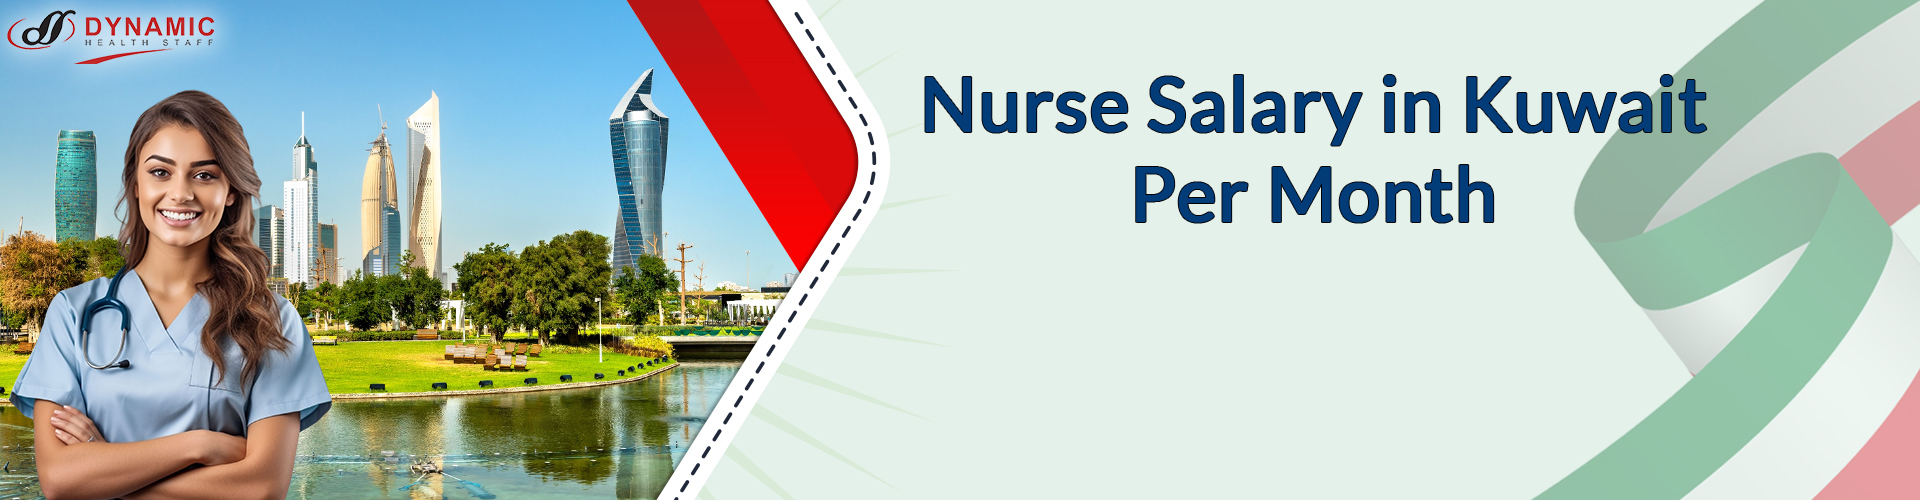 Nurse Salary in Kuwait Per Month